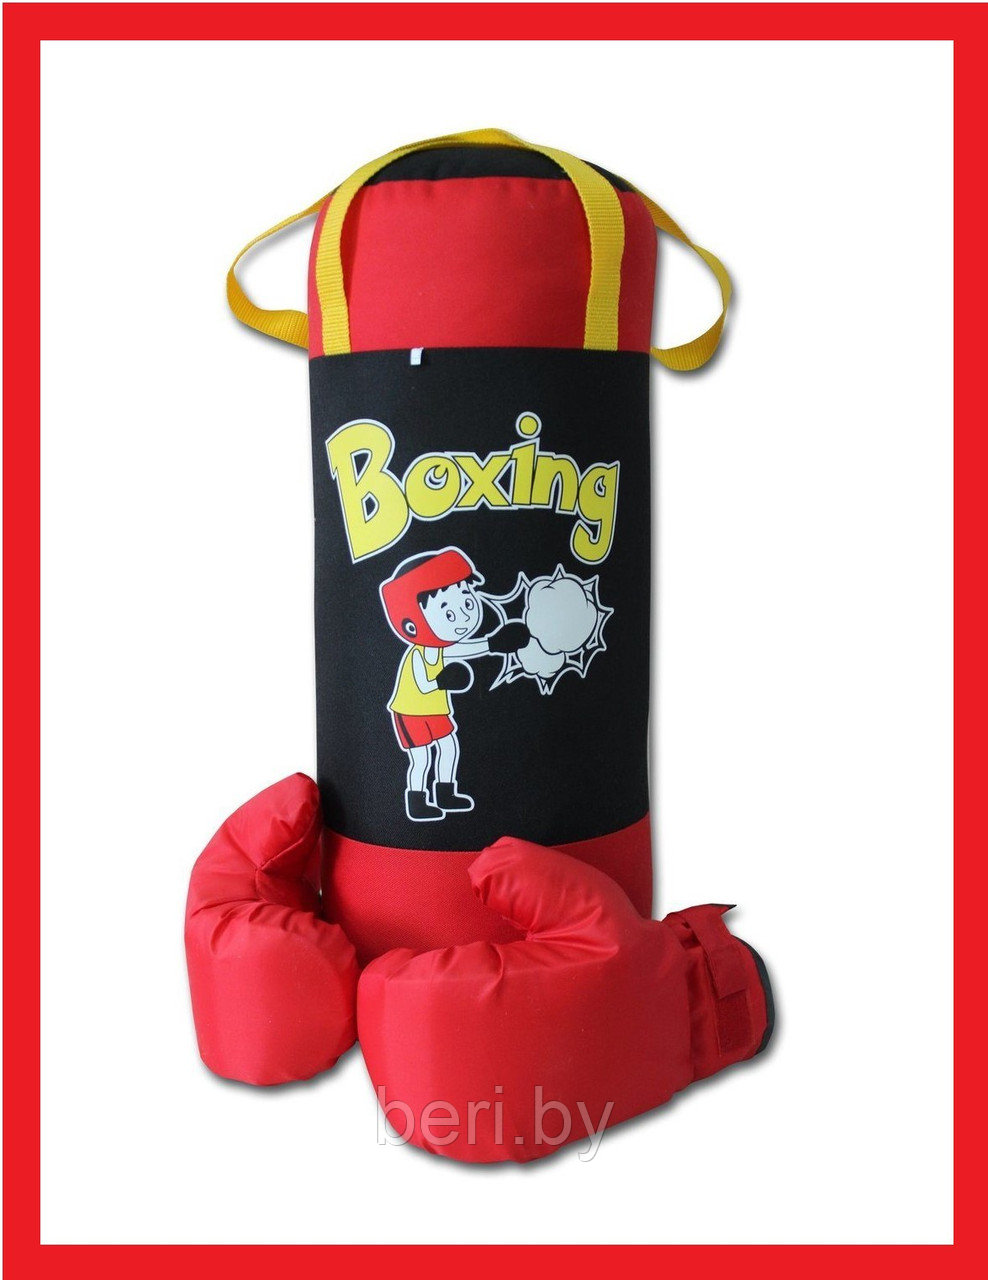 НБ-002-ЧКр/ПР2 НАБОР для бокса: груша 50 см х Ø20 см, с перчатками, черный+красный BOXING, ткань "Оксфорд"